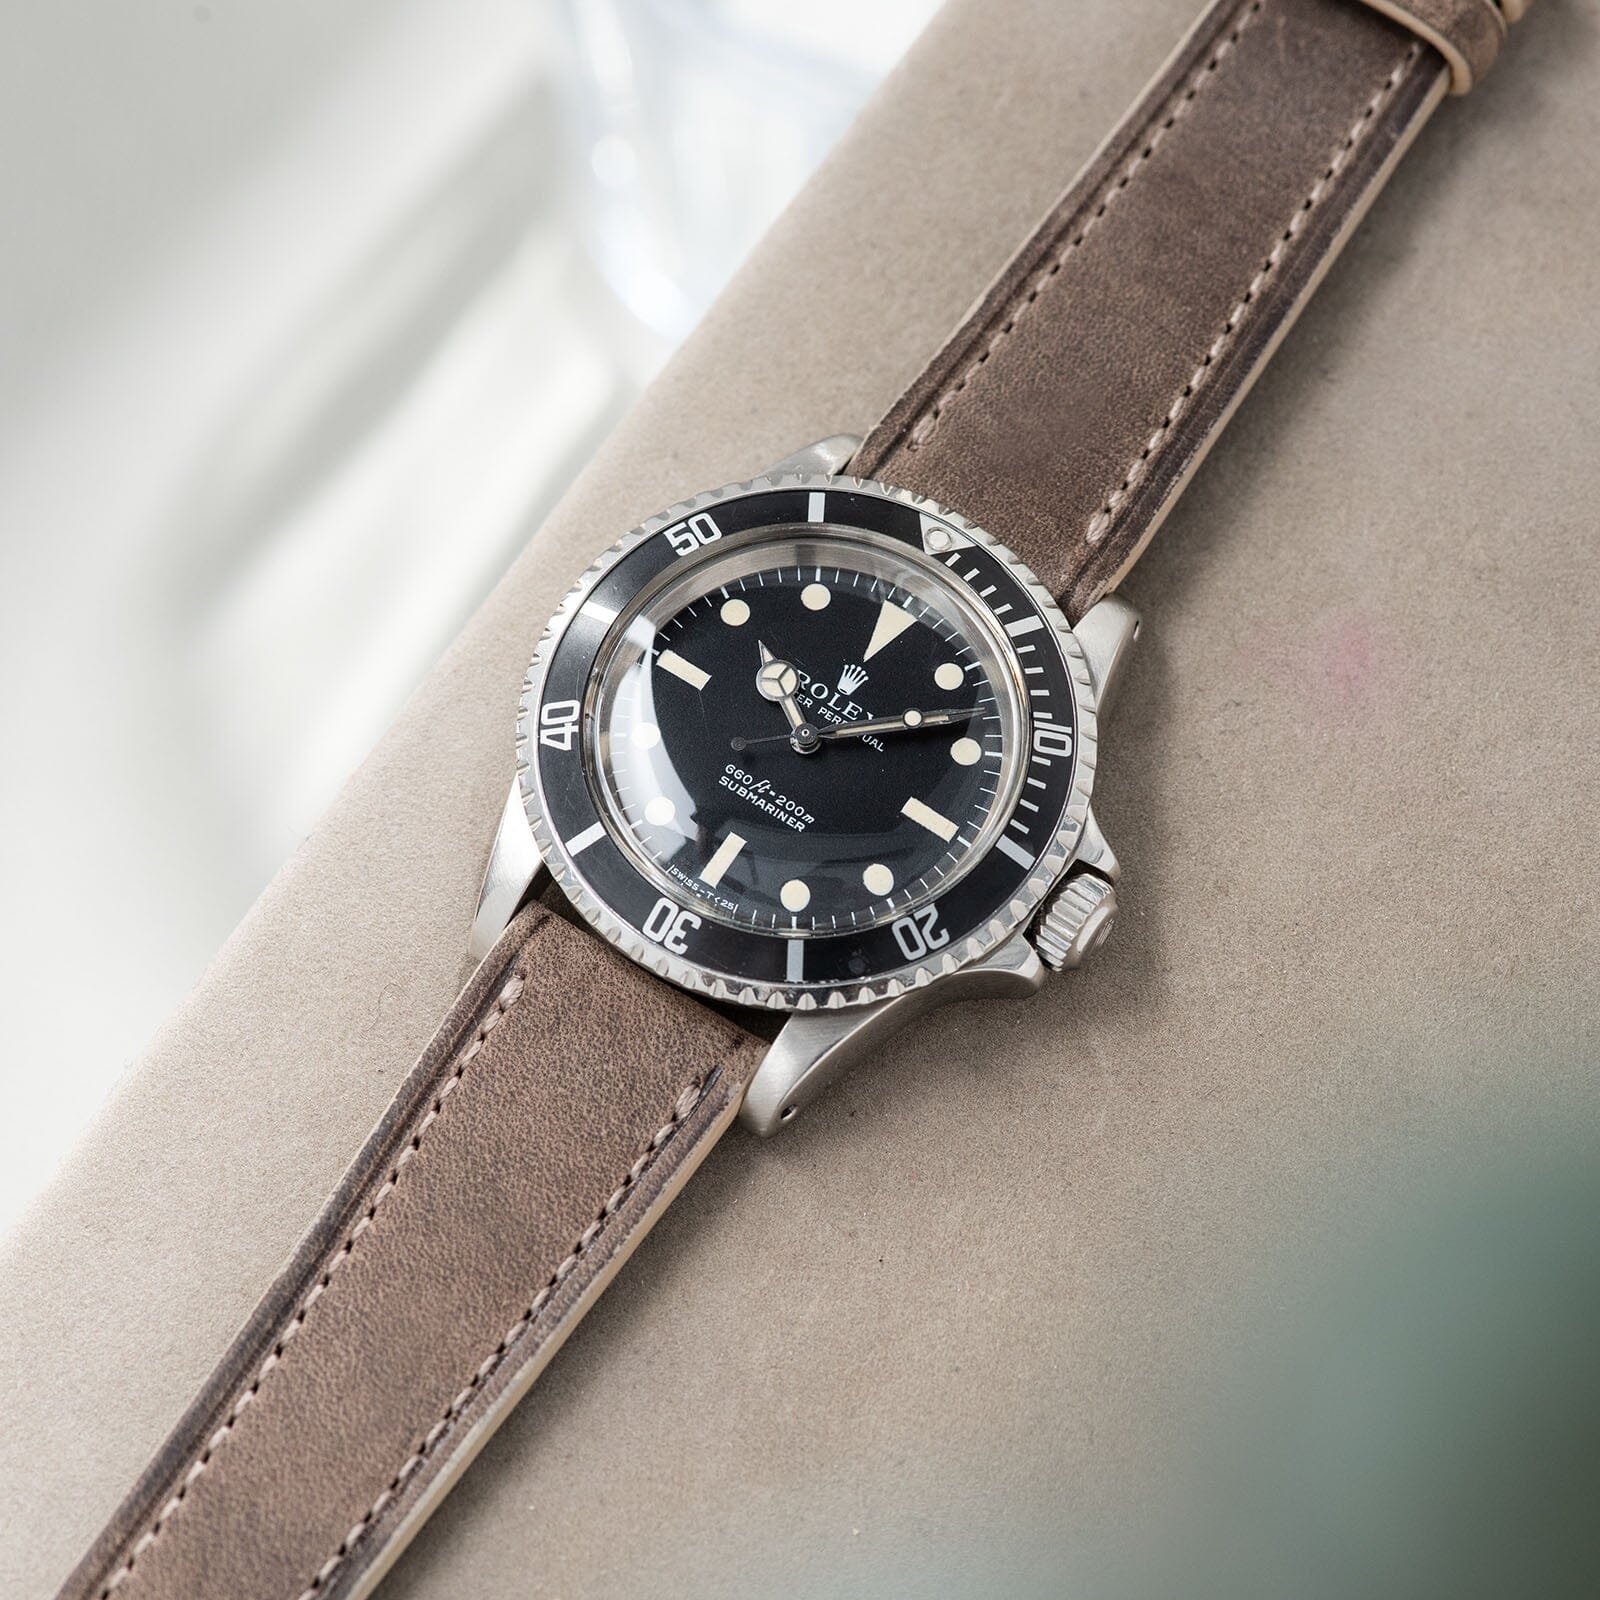 Smoke Grey Retro Leather Watch Strap